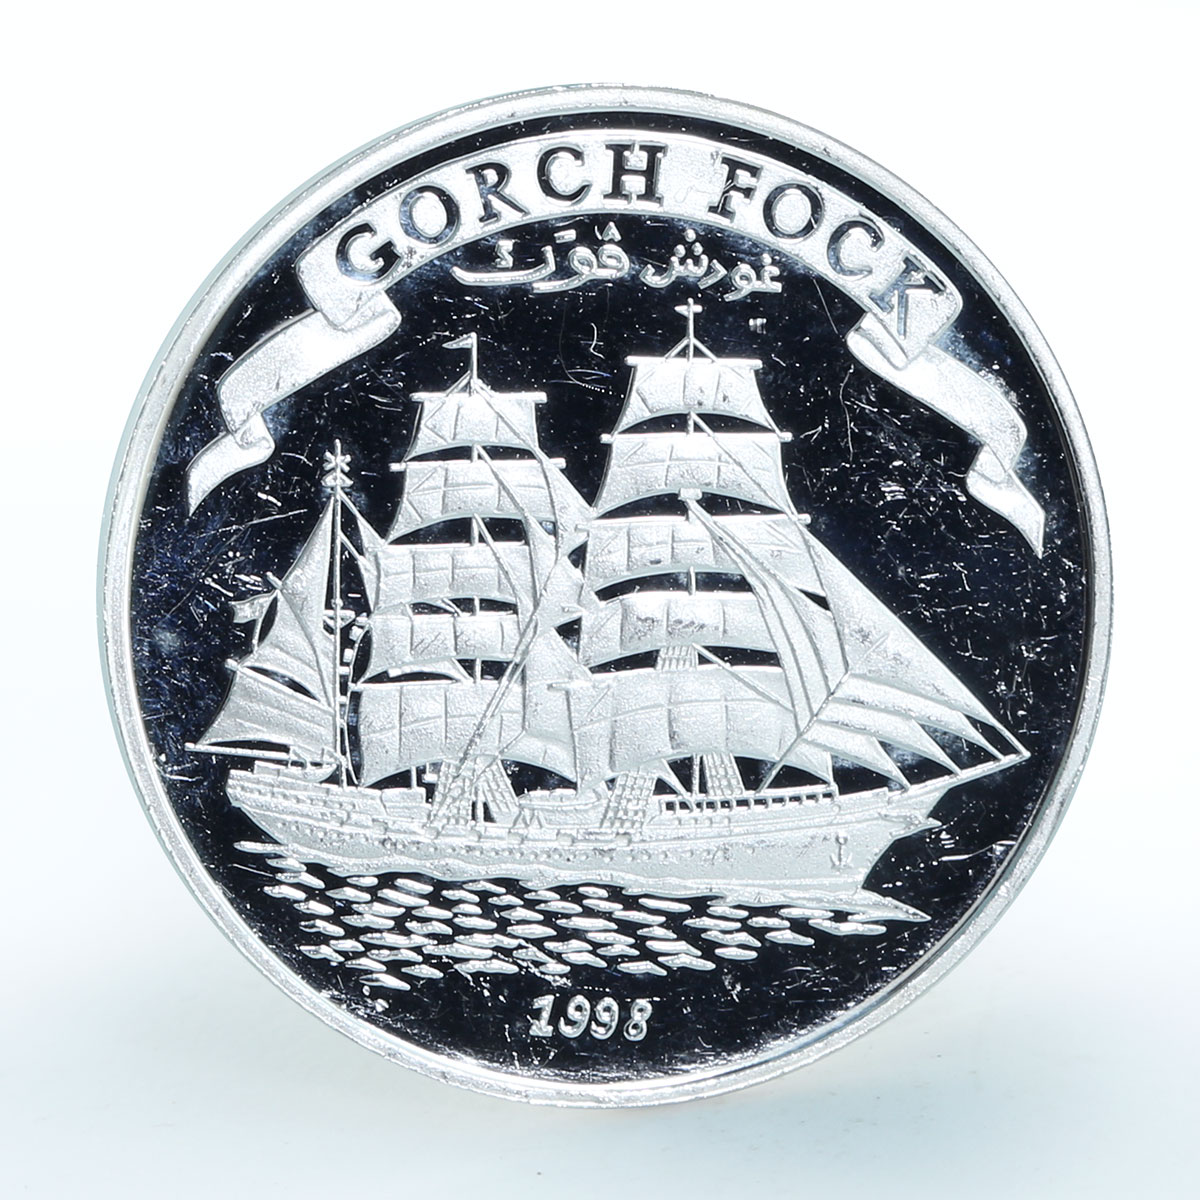 Somalia 5000 shillings Gorch Fock ship proof silver coin 1998